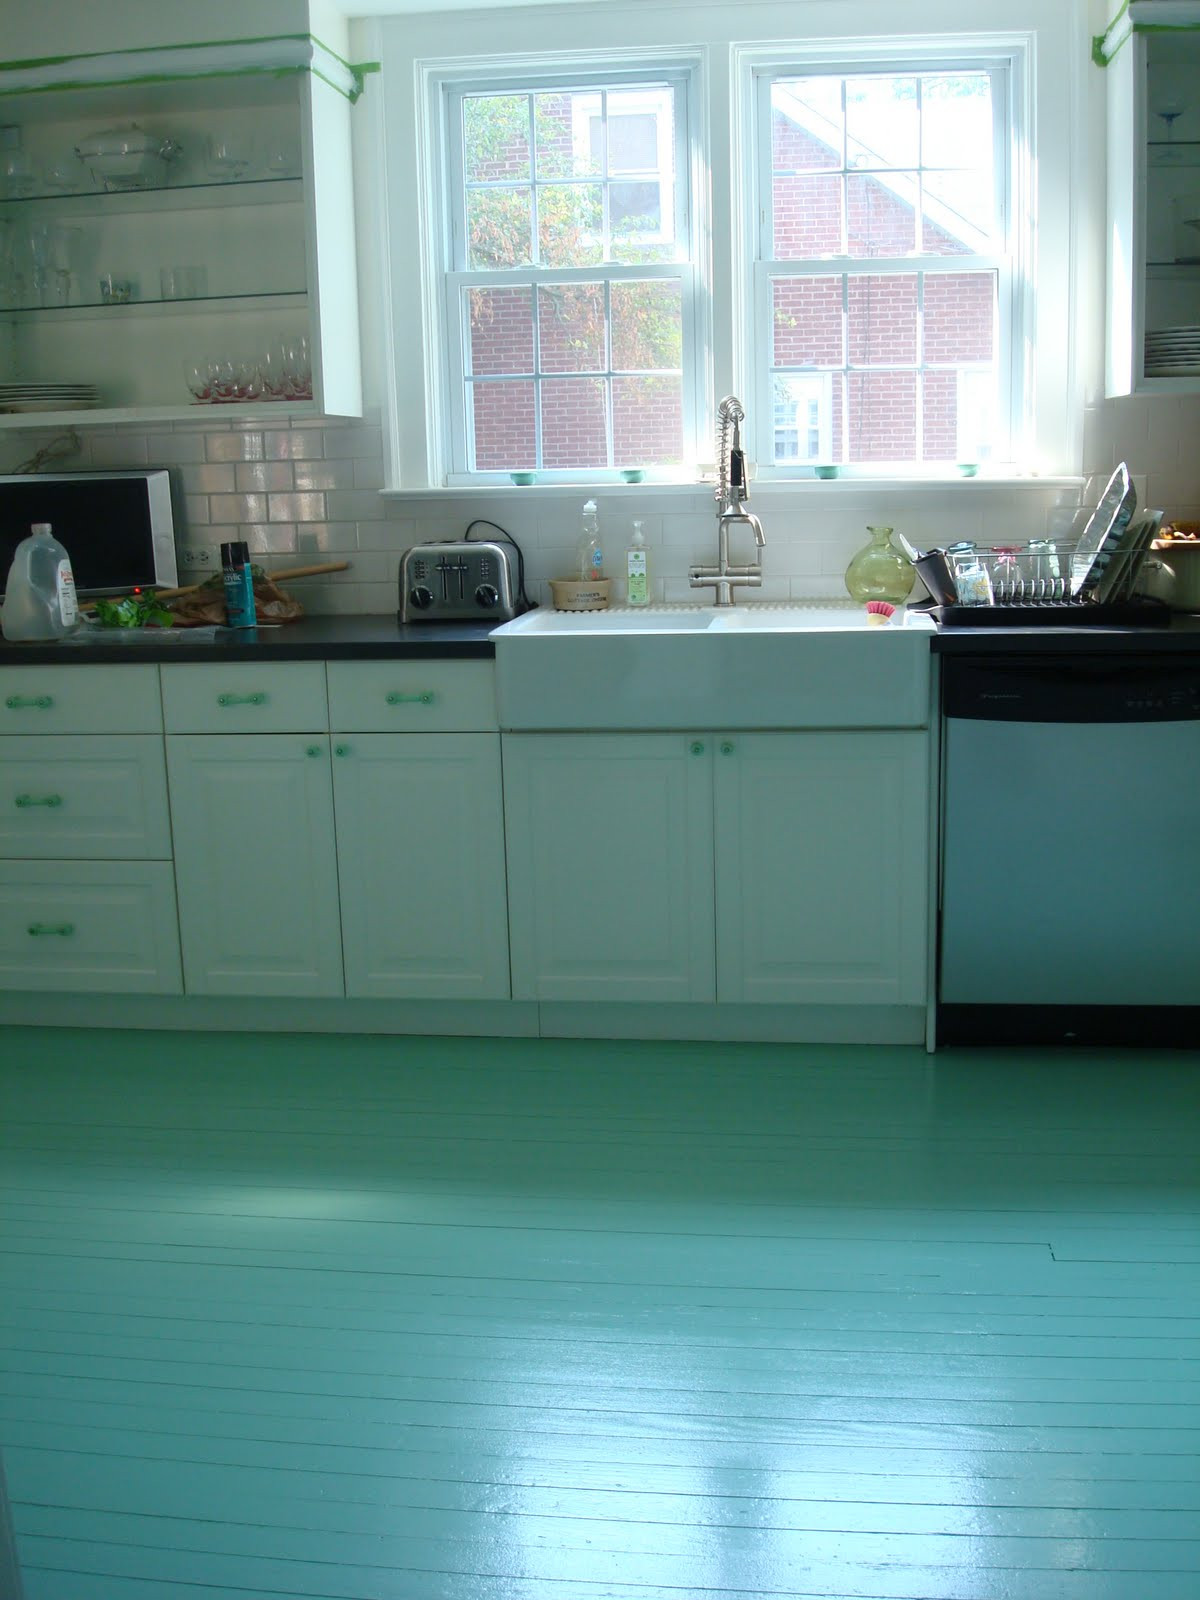 Painting Kitchen Tile Floor
 High Heeled Foot in the Door DIY Painted Kitchen Floor